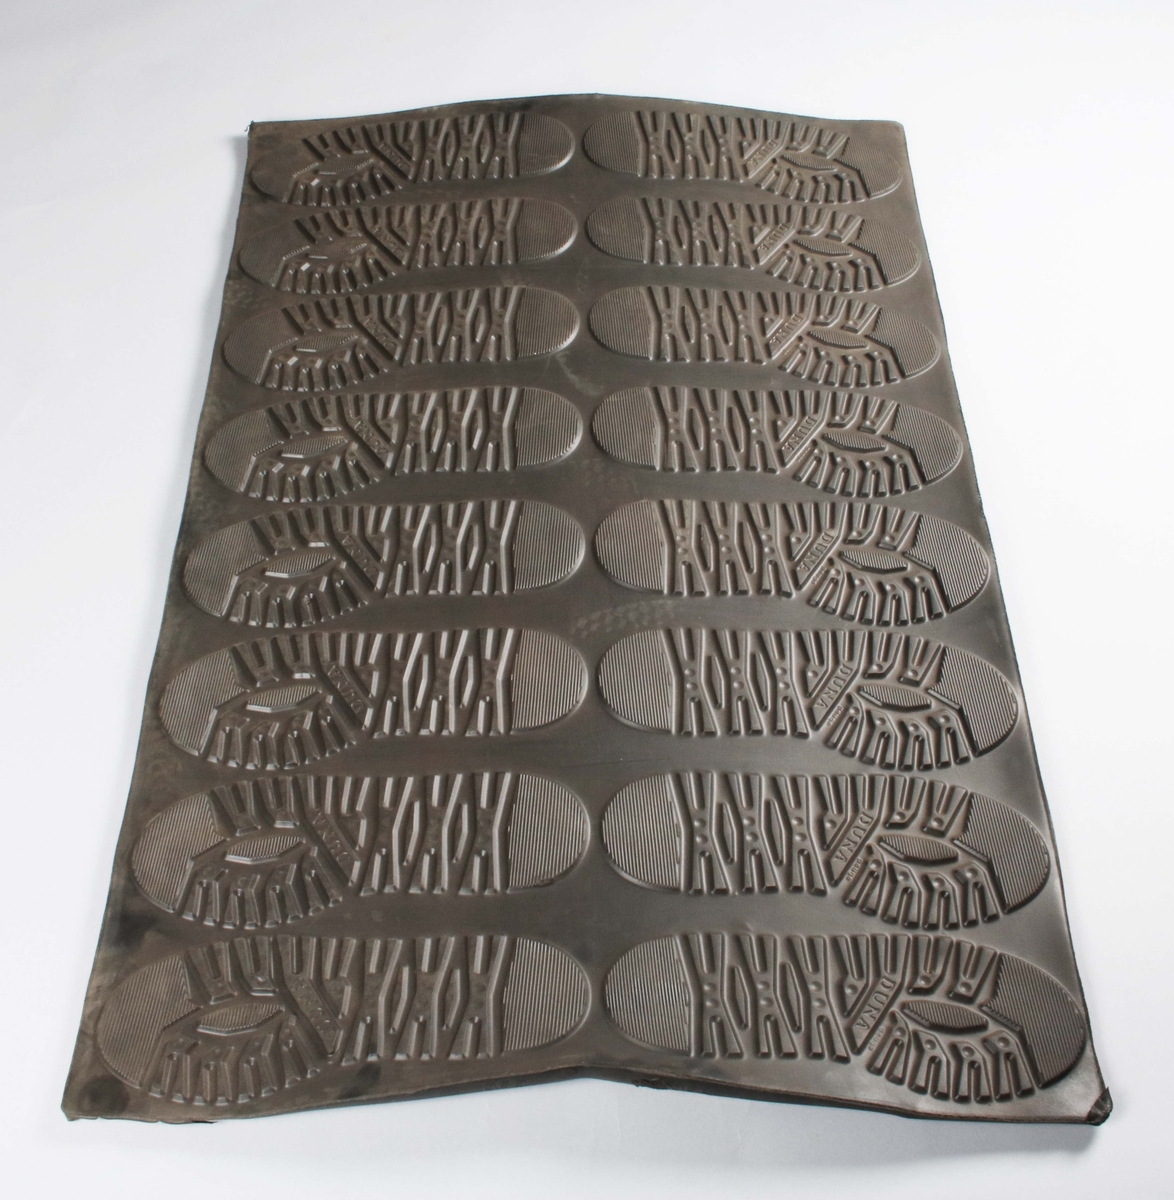 Rektangulär gummiplatta, med 16 gummisulor i relief, för tillverkning av skodon. 8 för höger fot och 8 för vänster fot. Färdiga för utstansning.
Sulorna märkta: DUNA Peuge